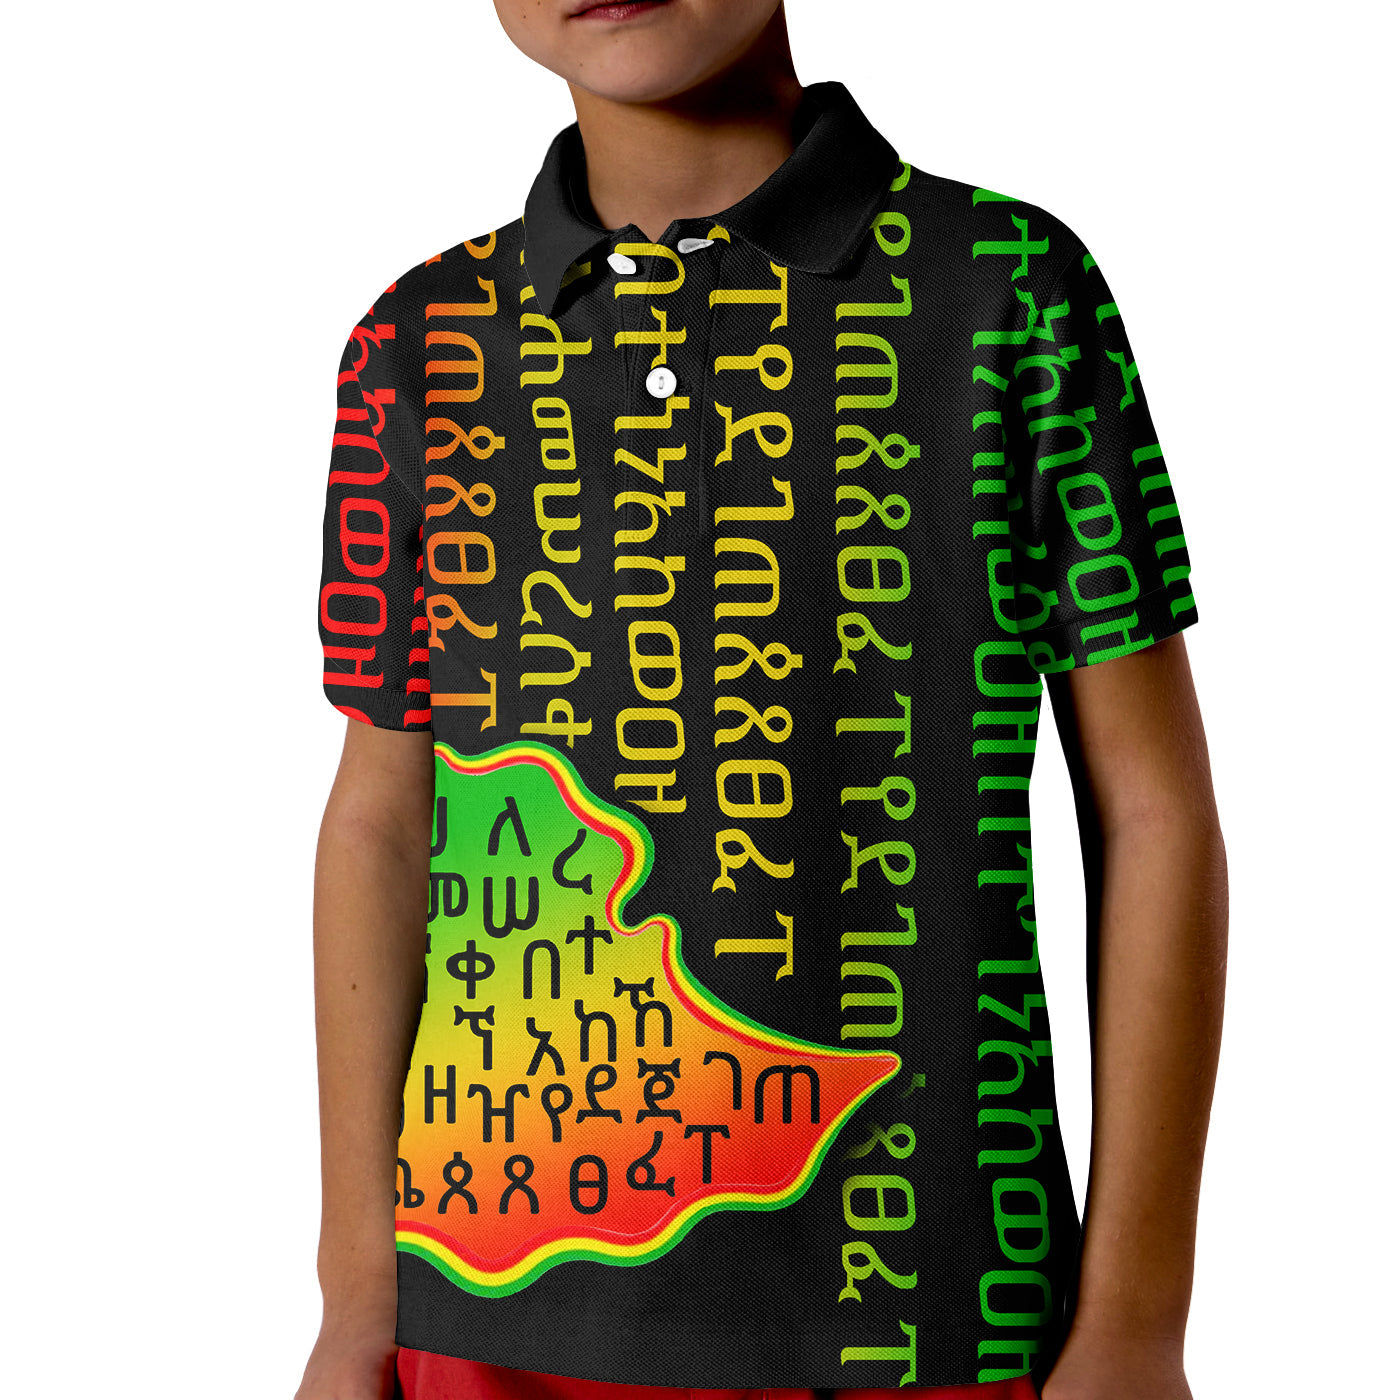 ethiopia-polo-shirt-kid-ethiopia-alphabet-patterns